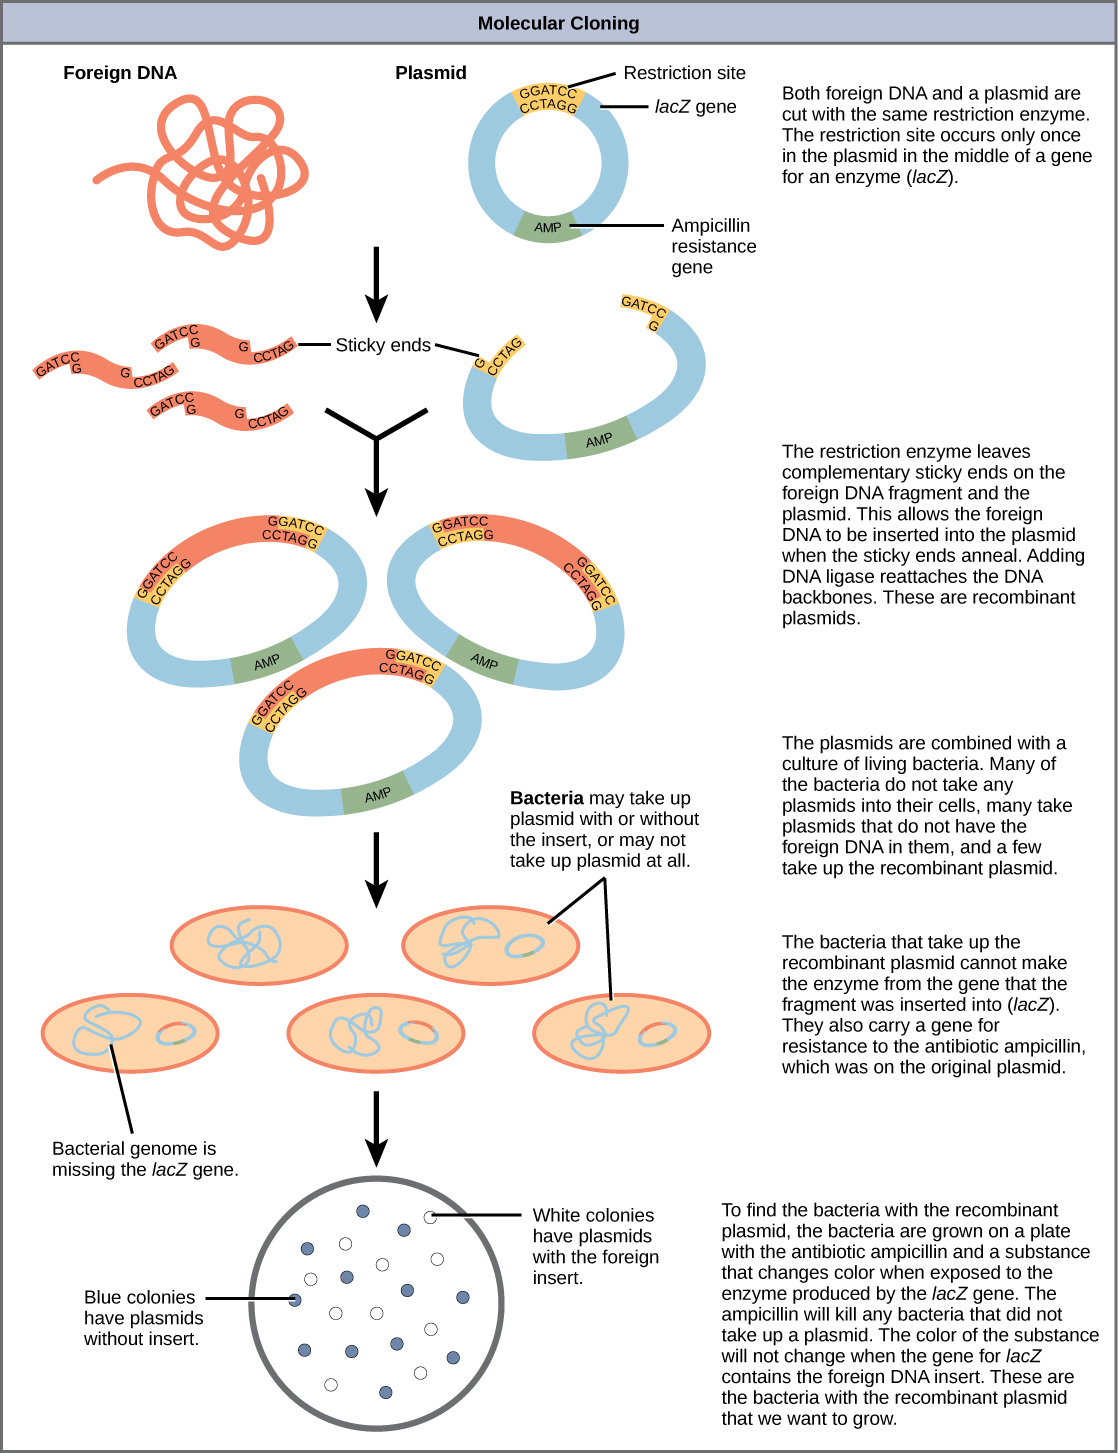 Una ilustración que muestra los pasos para crear plásmidos de ADN recombinante, insertarlos en bacterias y luego seleccionar solo las bacterias que han absorbido con éxito el plásmido recombinante. Los pasos son los siguientes: tanto el ADN extraño como un plásmido se cortan con la misma enzima de restricción. El sitio de restricción ocurre solo una vez en el plásmido en medio de un gen para una enzima (lacZ). La enzima de restricción deja extremos pegajosos complementarios en el fragmento de ADN extraño y el plásmido. Esto permite que el ADN extraño se inserte en el plásmido cuando los extremos pegajosos se hibridan. La adición de ADN ligasa vuelve a conectar las cadenas principales de ADN. Estos son plásmidos recombinantes. Los plásmidos se combinan con un cultivo de bacterias vivas. Muchas de las bacterias no toman ningún plásmido en sus células, muchas toman plásmidos que no tienen el ADN extraño en ellas, y algunas toman el plásmido recombinante. Las bacterias que toman el plásmido recombinante no pueden producir la enzima a partir del gen en el que se insertó el fragmento (lacZ). También portan un gen de resistencia al antibiótico ampicilina, que estaba en el plásmido original. Para encontrar las bacterias con el plásmido recombinante, las bacterias se cultivan en una placa con el antibiótico ampicilina y una sustancia que cambia de color cuando se expone a la enzima producida por el gen lacZ. La ampicilina matará a cualquier bacteria que no tomara un plásmido. El color de la sustancia no cambiará cuando el gen para lacZ contenga el inserto de ADN extraño. Estas son las bacterias con el plásmido recombinante que queremos cultivar.